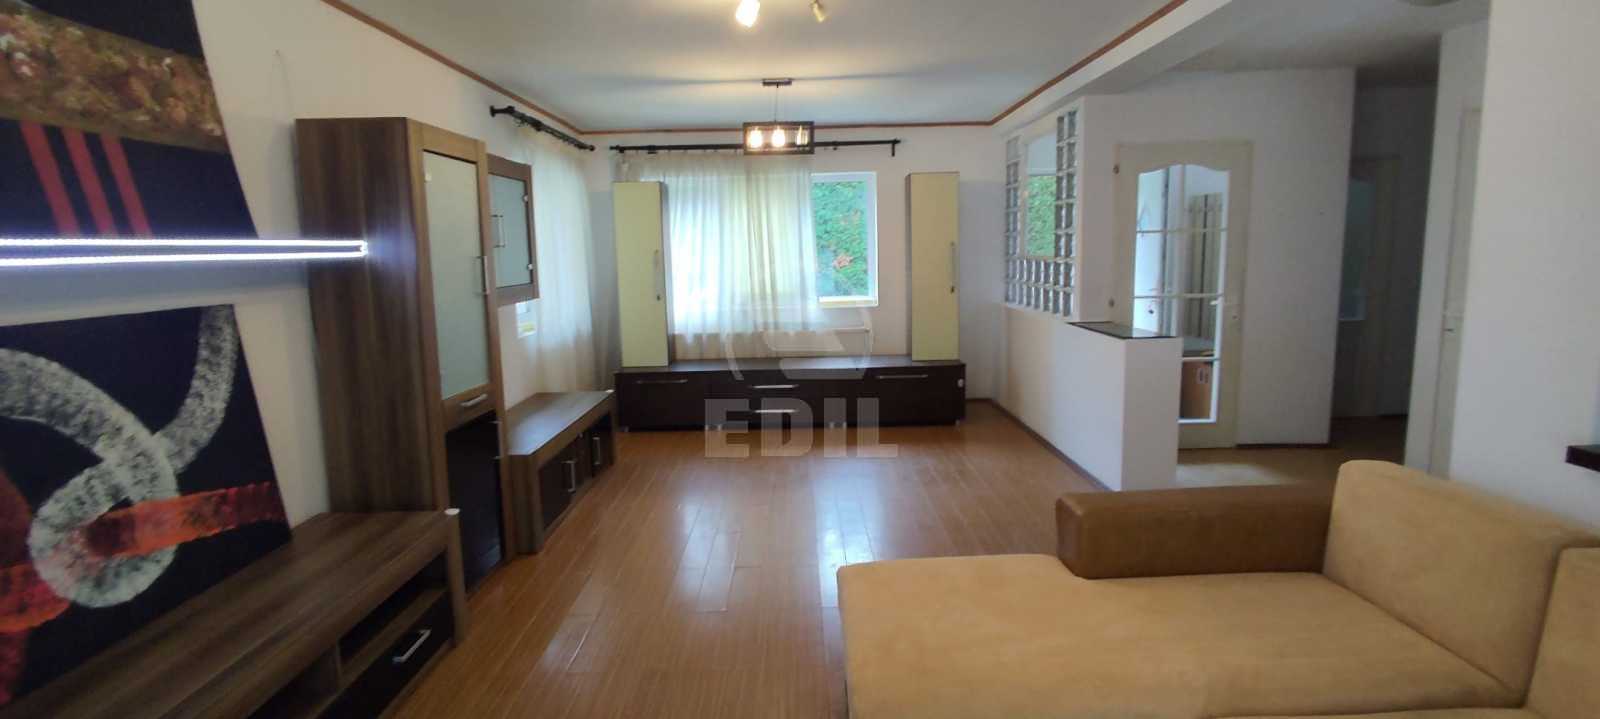 Rent House 4 Rooms MANASTUR-2